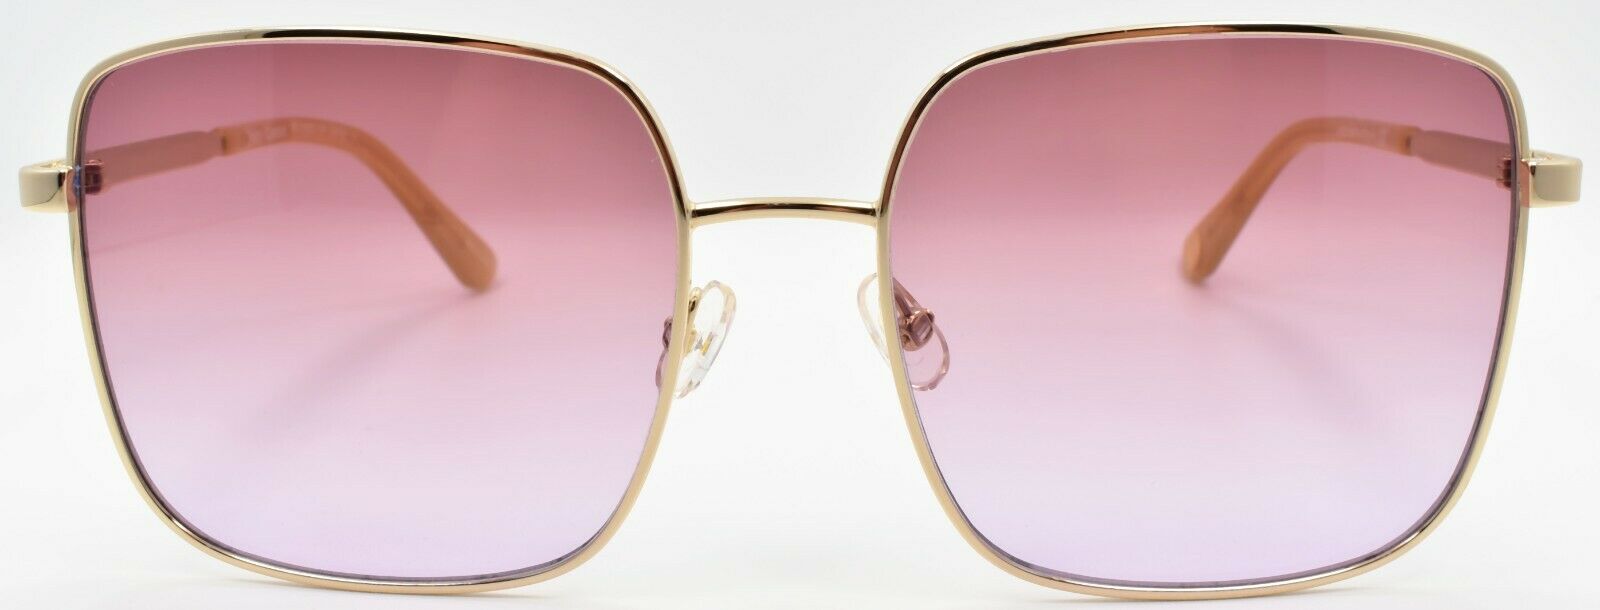 2-Juicy Couture JU605/S 84QER Women's Sunglasses Gold Beige / Brown Gradient-716736151229-IKSpecs